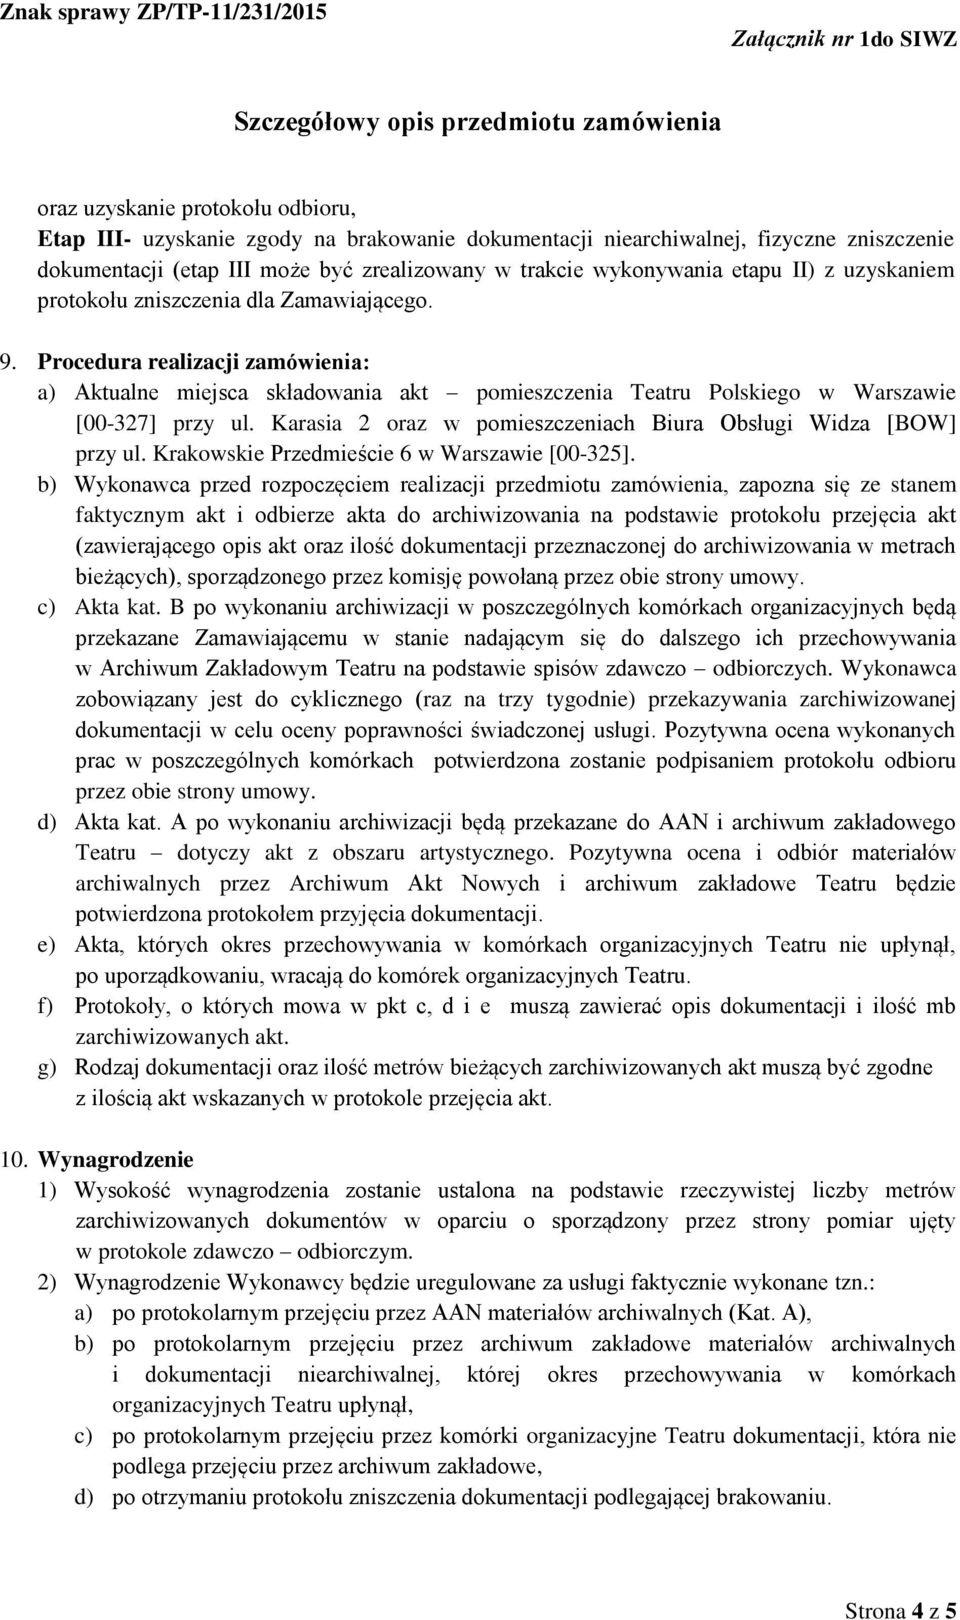 Karasia 2 oraz w pomieszczeniach Biura Obsługi Widza [BOW] przy ul. Krakowskie Przedmieście 6 w Warszawie [00-325].